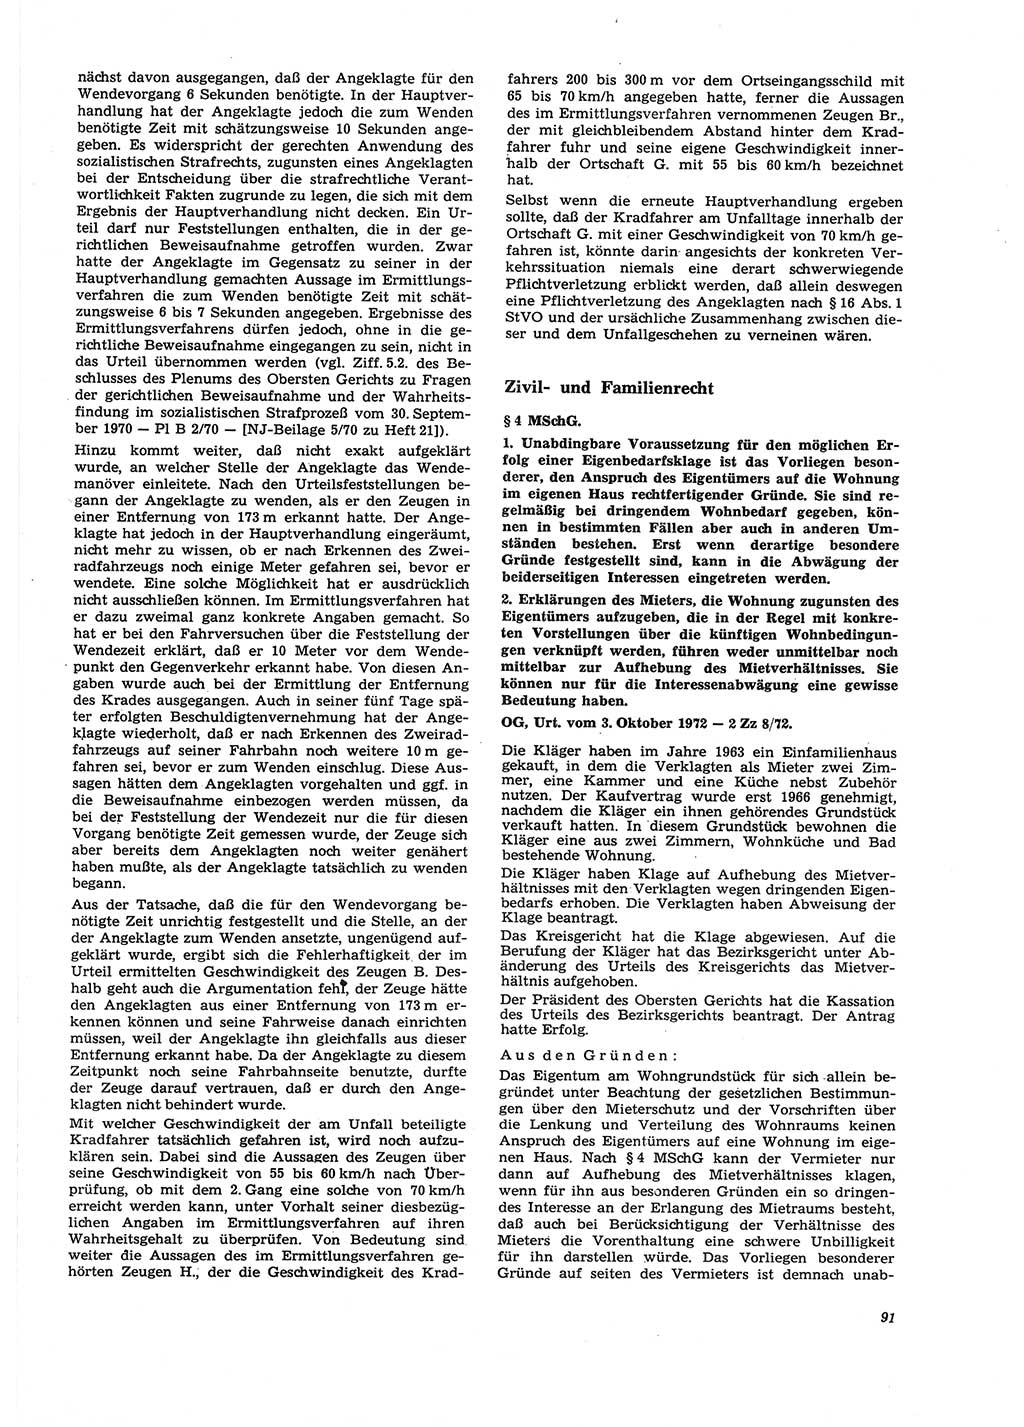 Neue Justiz (NJ), Zeitschrift für Recht und Rechtswissenschaft [Deutsche Demokratische Republik (DDR)], 27. Jahrgang 1973, Seite 91 (NJ DDR 1973, S. 91)